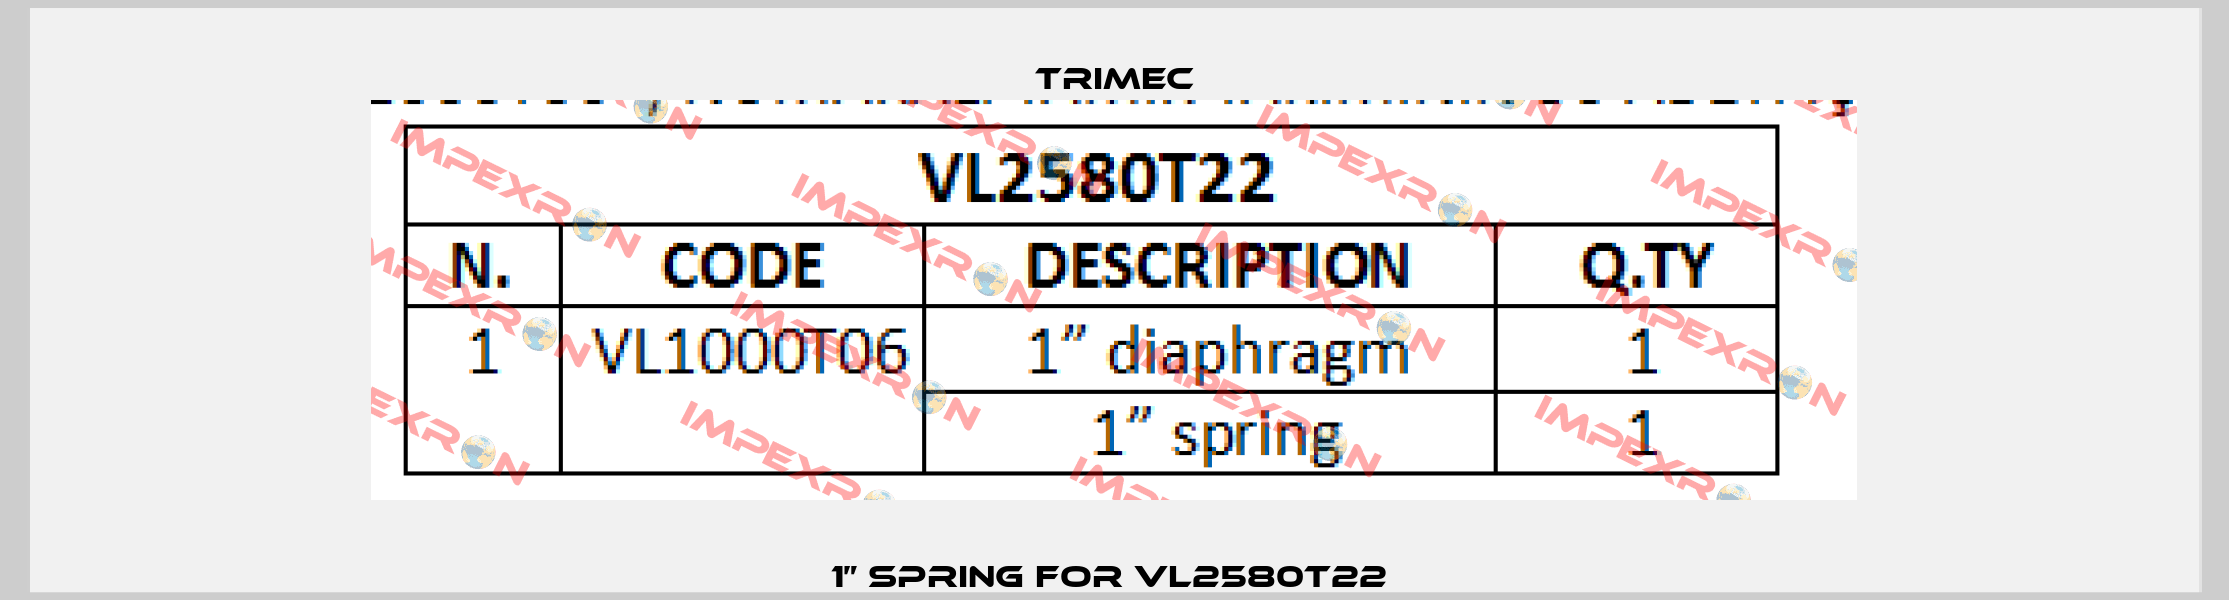 1” spring For VL2580T22  Trimec